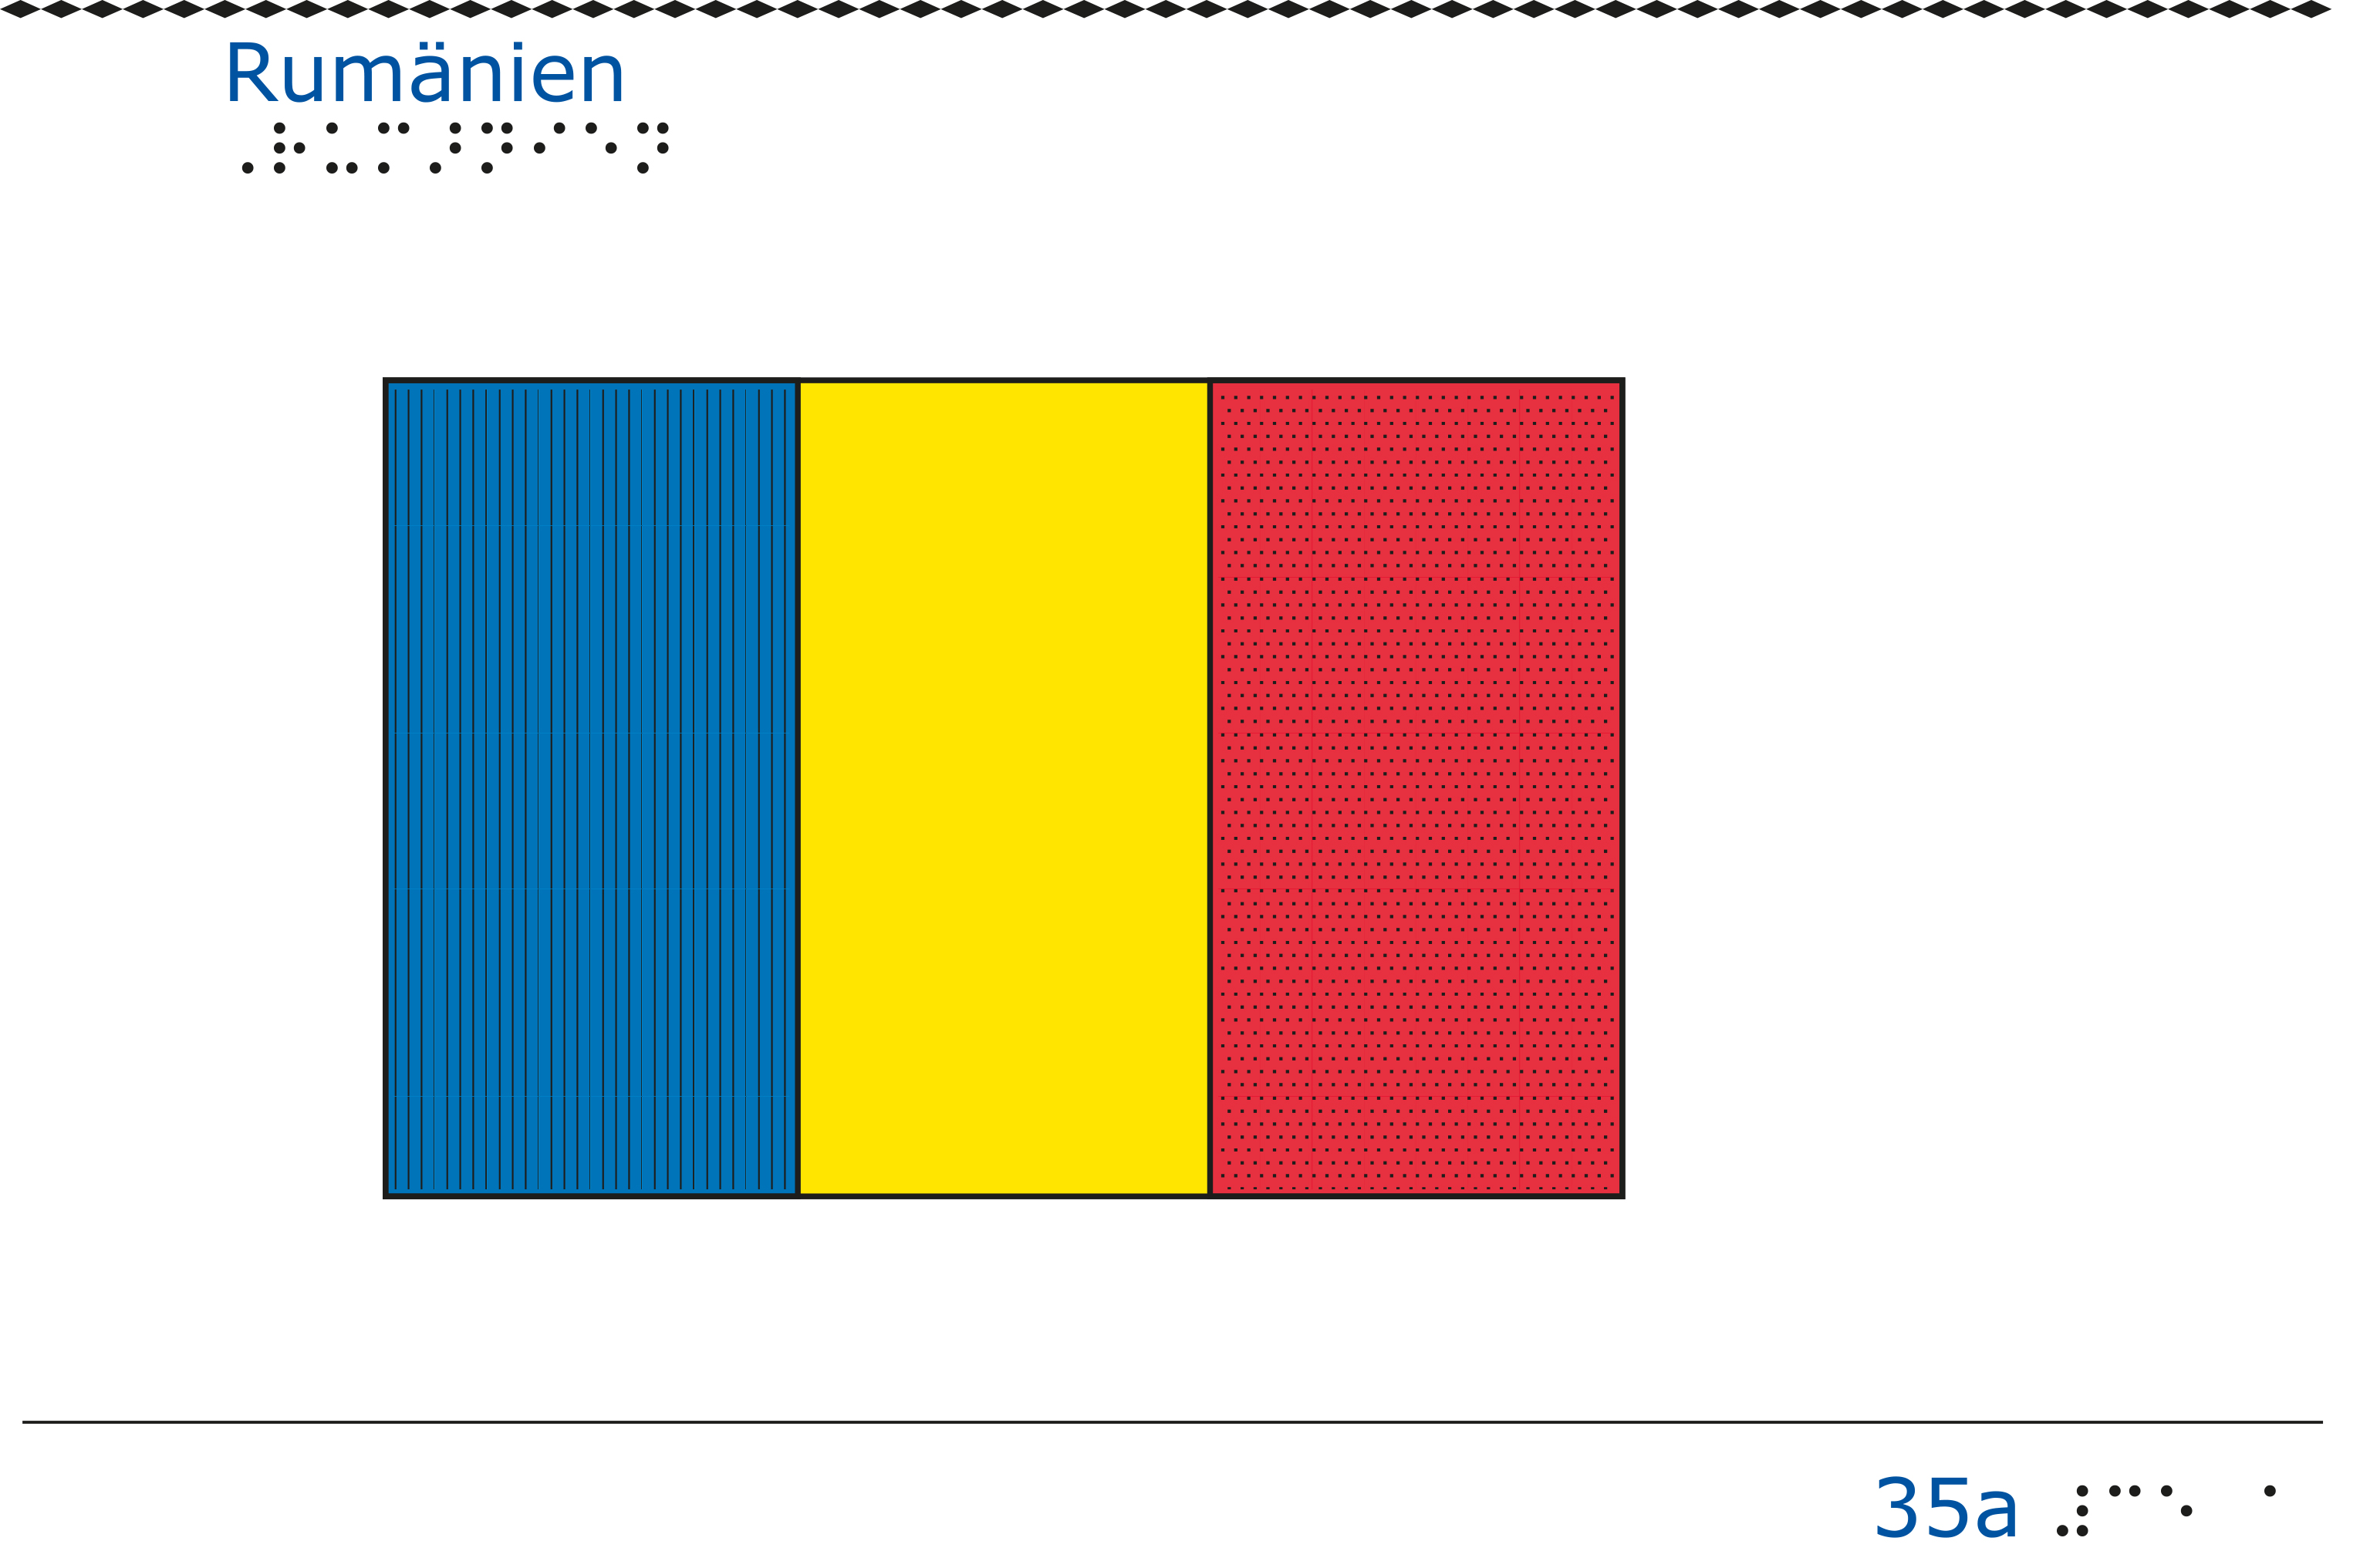 Taktil bild - Rumäniens flagga.